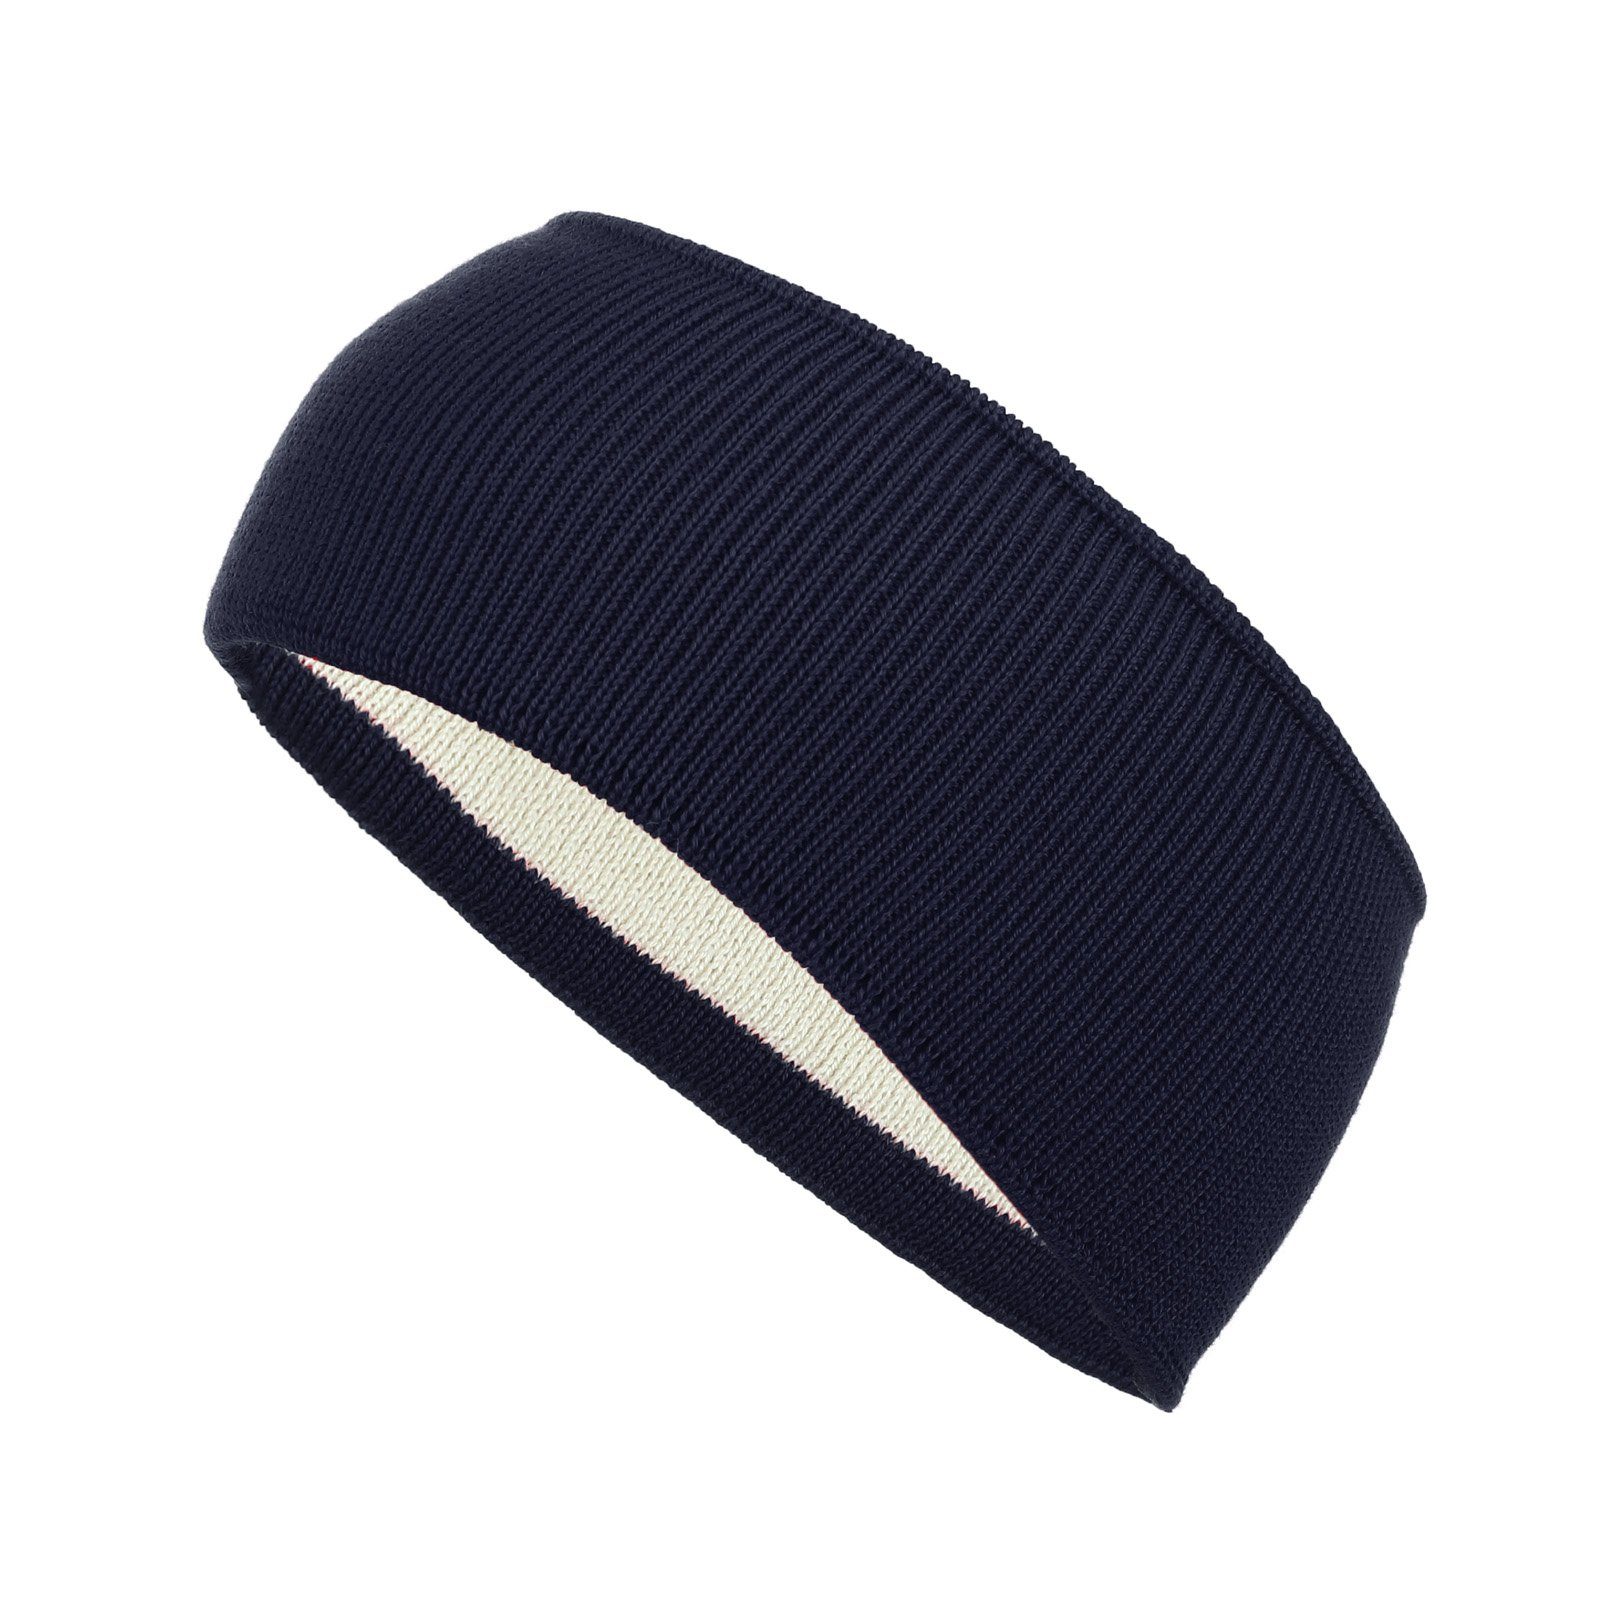 modAS Stirnband Unisex Winter Headband - Kopfband Ohrenwärmer aus Wolle (16) marine